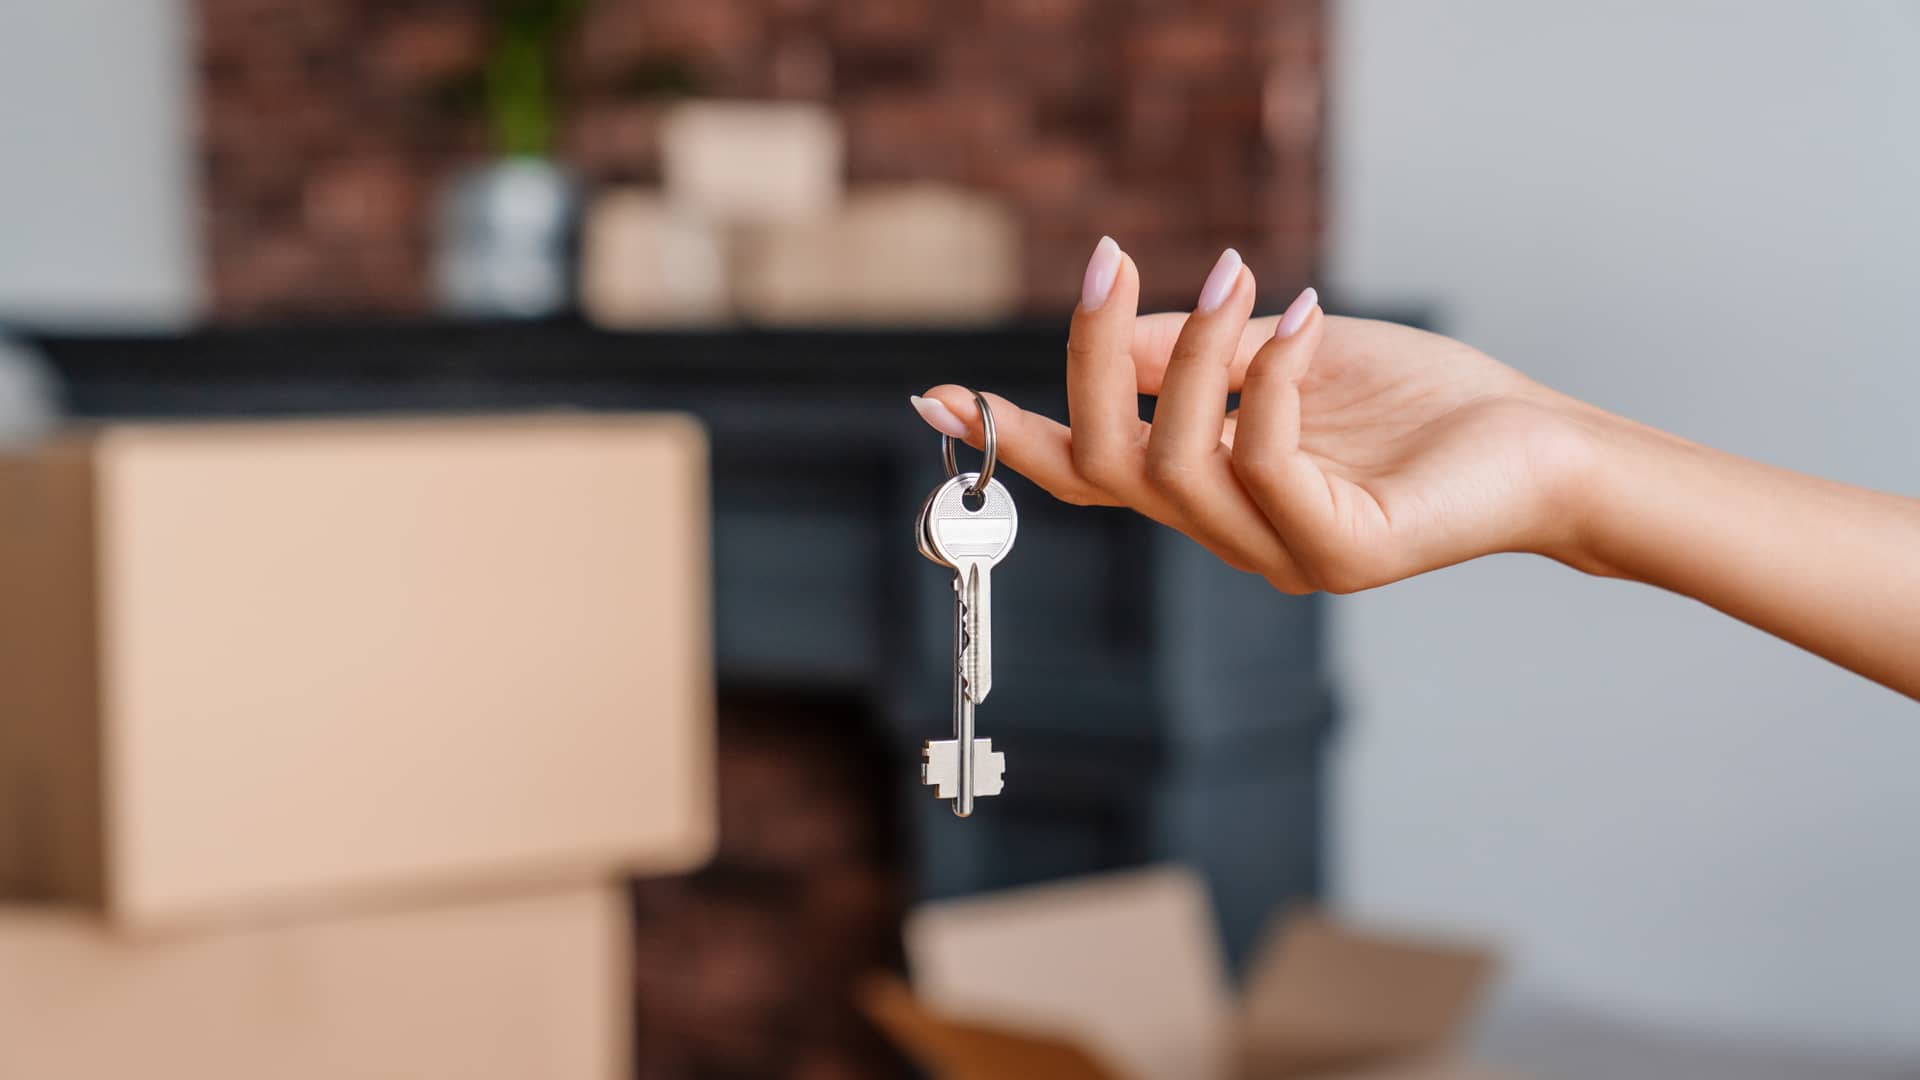 llaves de un piso delante de unas cajas de mundanza que representa el seguro de arrendamiento de caser seguros